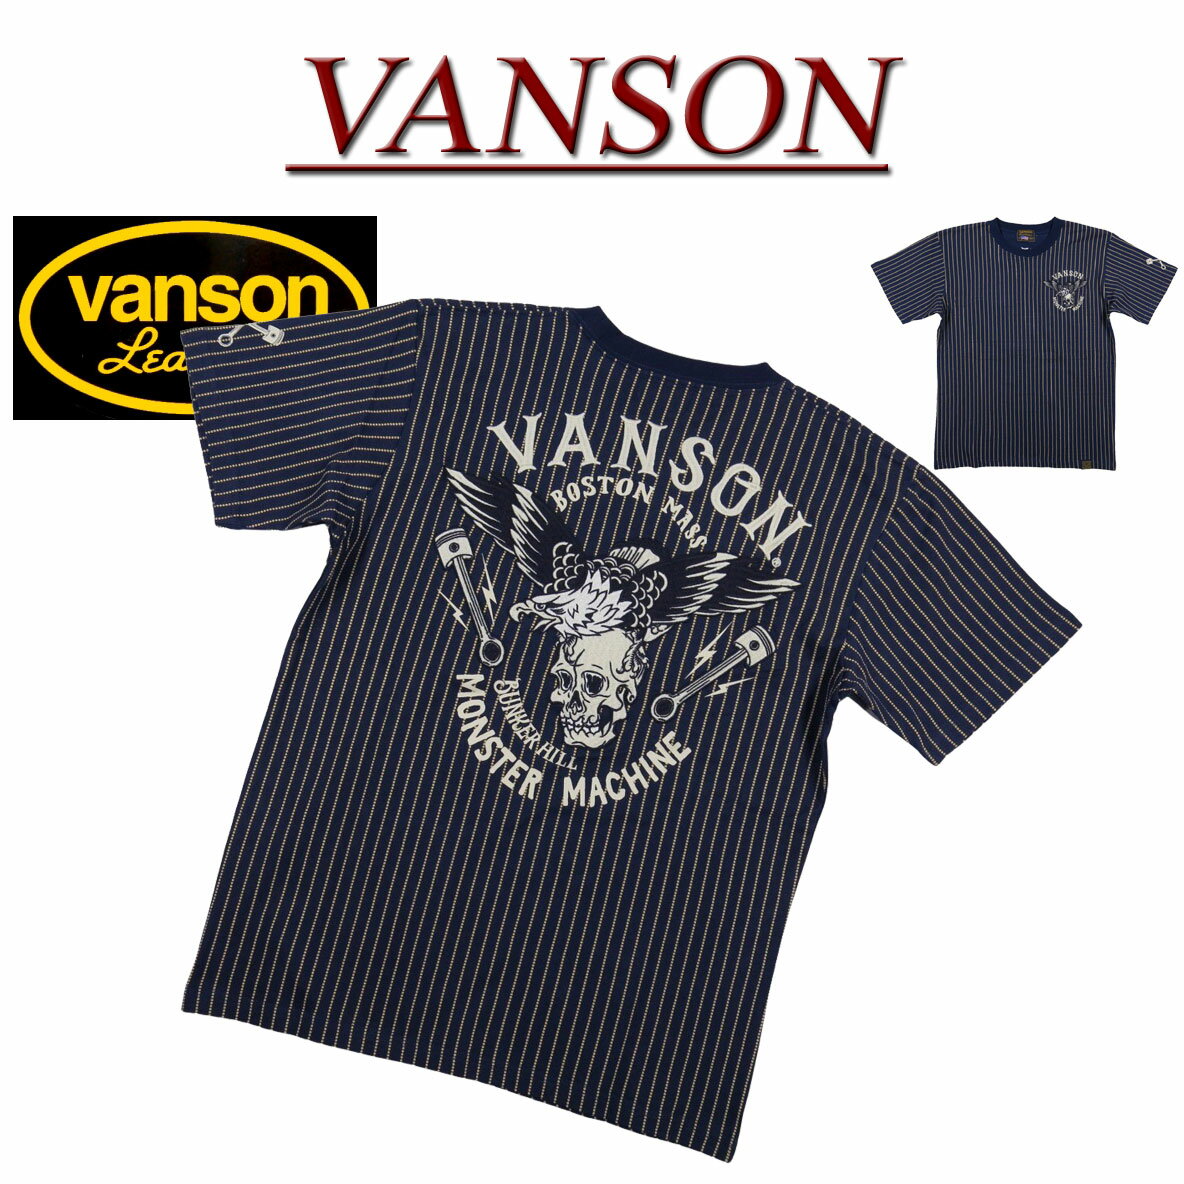  nc981 新品 VANSON アメリカンイーグル スカル ピストン刺繍 ウォバッシュ ストライプ 半袖 Tシャツ NVST-2214 メンズ バンソン ドクロ AMERICAN EAGLE WABASH STRIPE SHORT SLEEVES T-SHIRT ティーシャツ ヴァンソン 